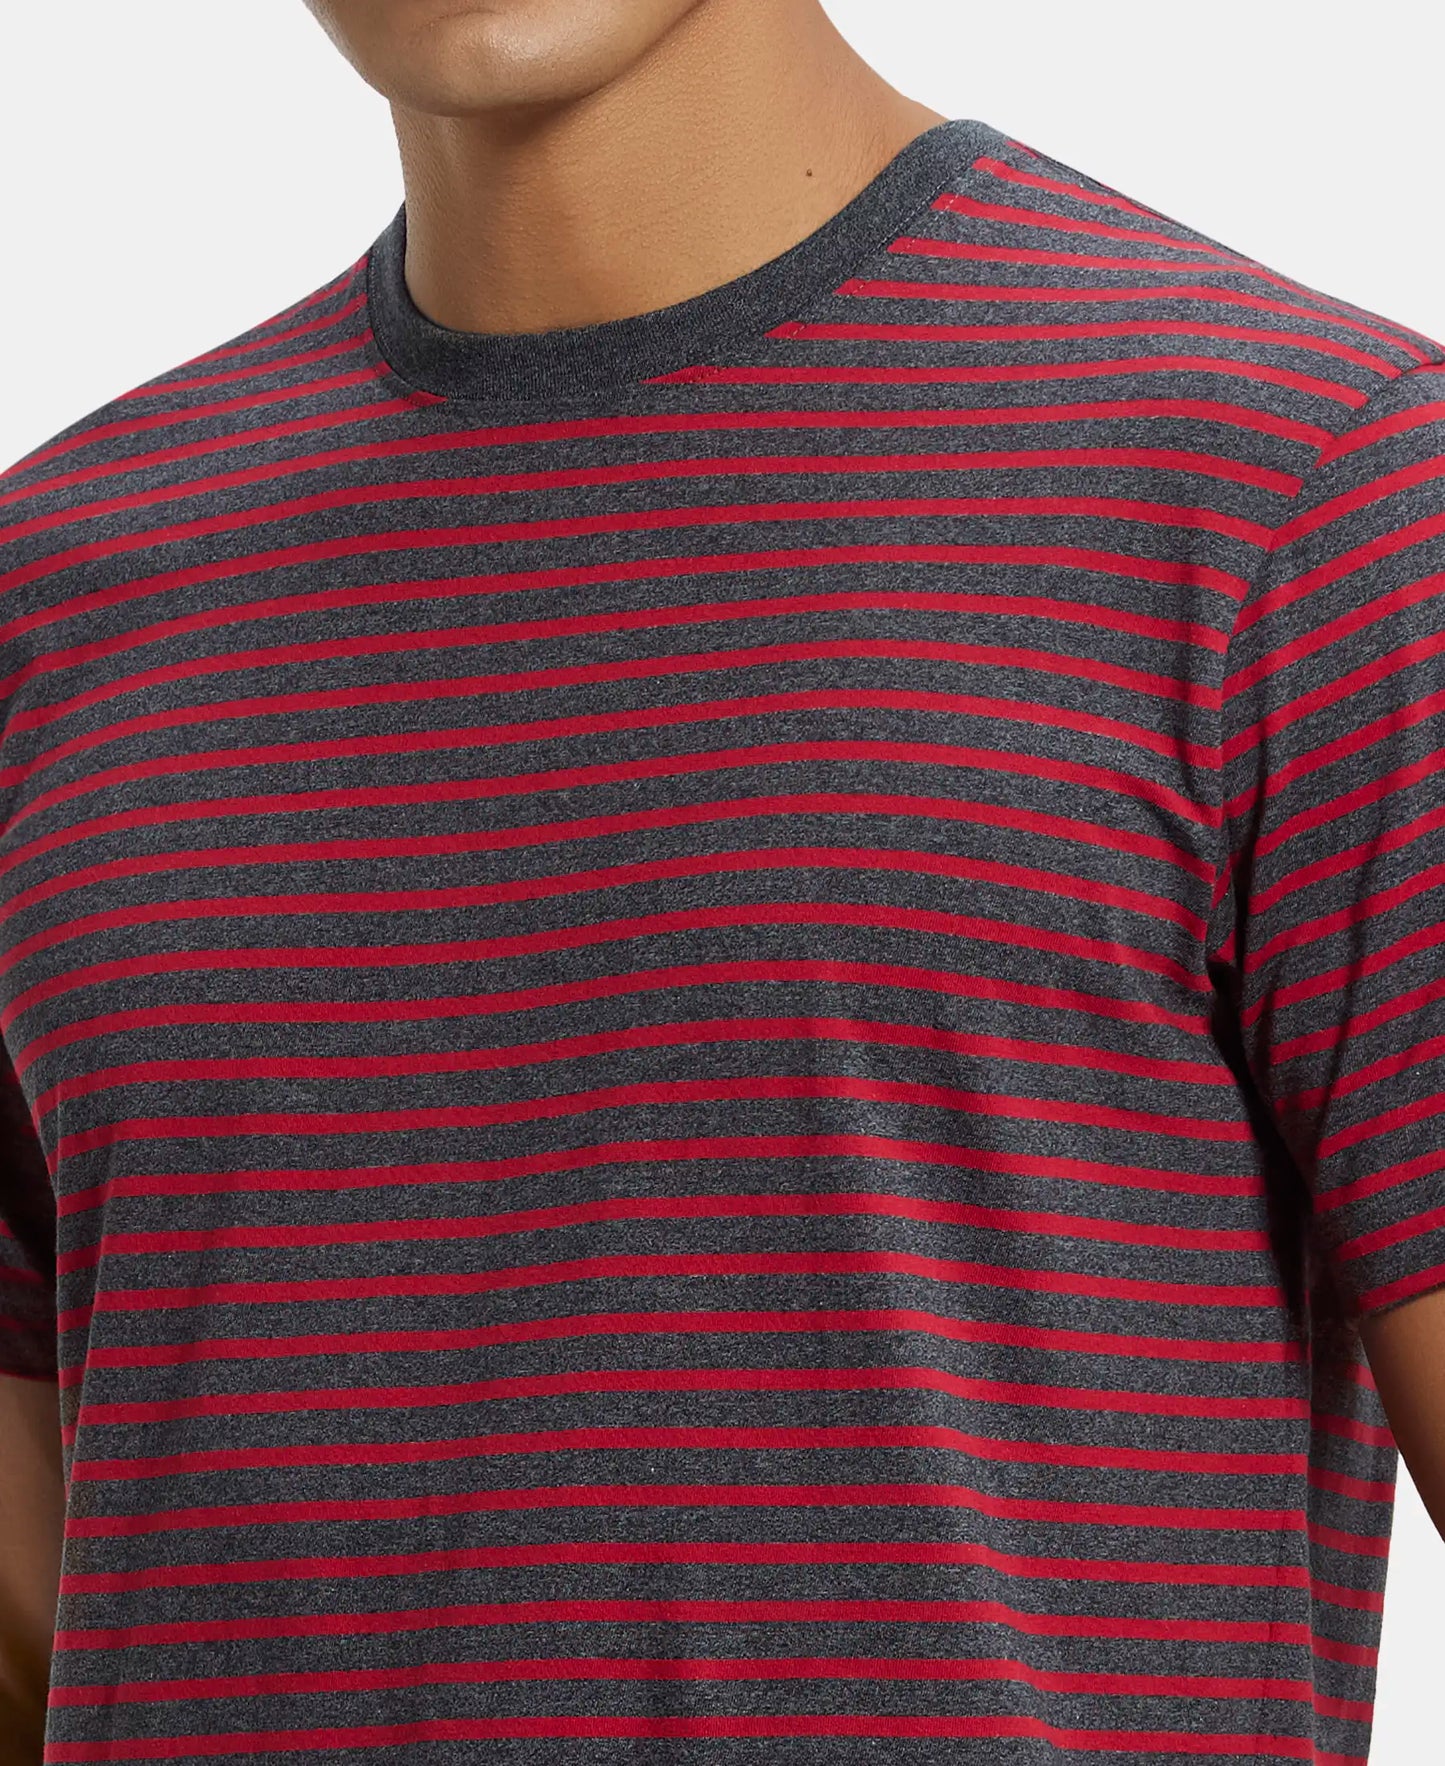 Super Combed Cotton Rich Striped Round Neck Half Sleeve T-Shirt - True Black & Shanghai Red-6